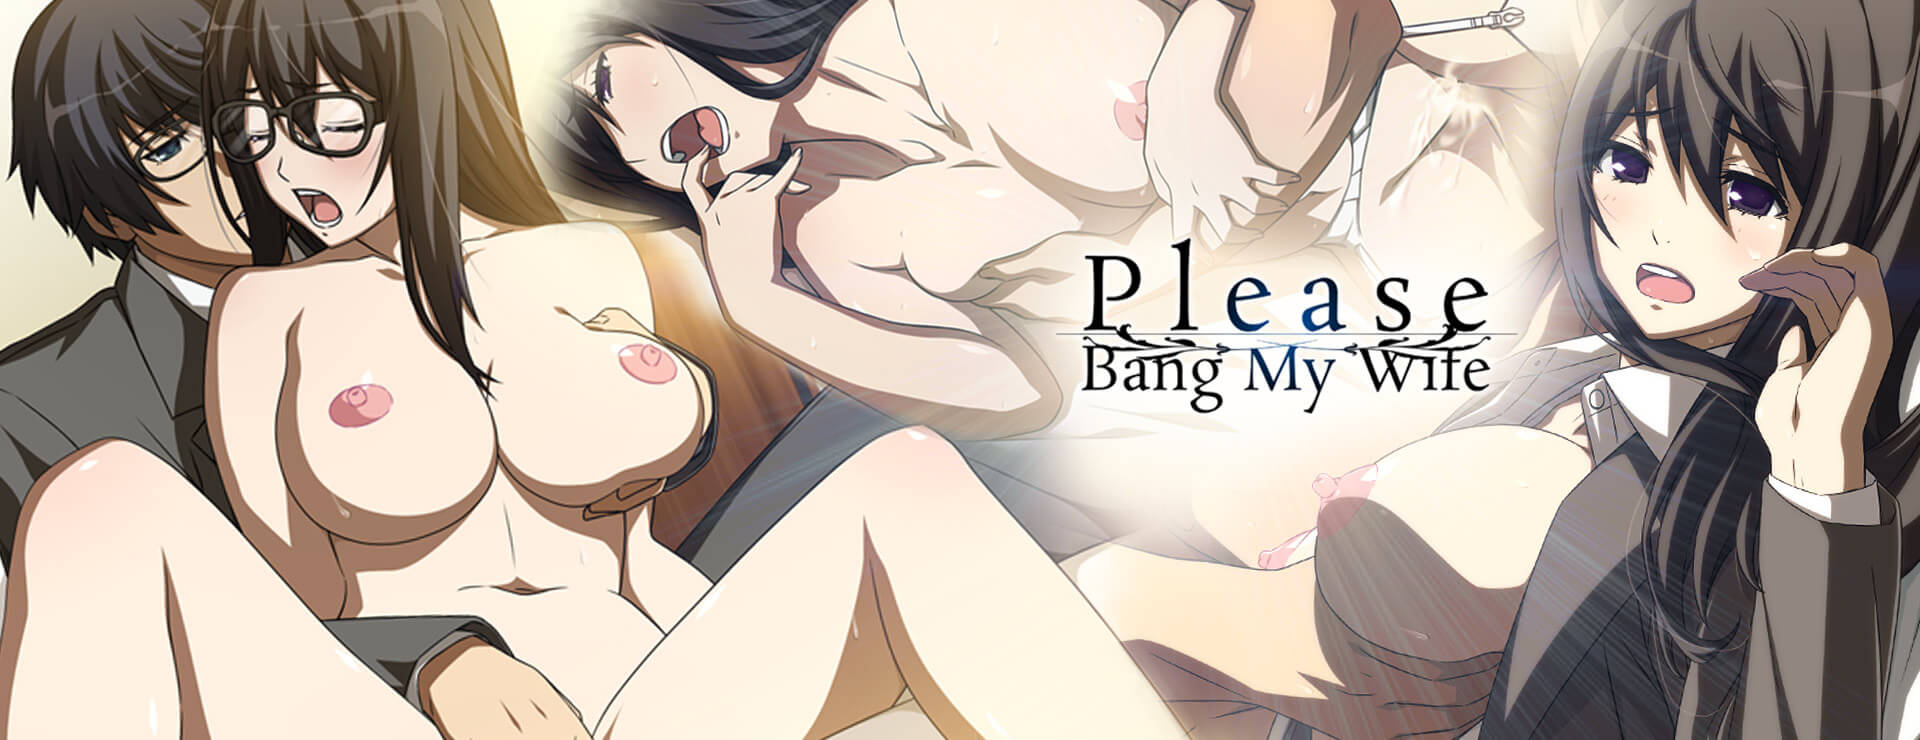 Please Bang My Wife - ビジュアルノベル ゲーム